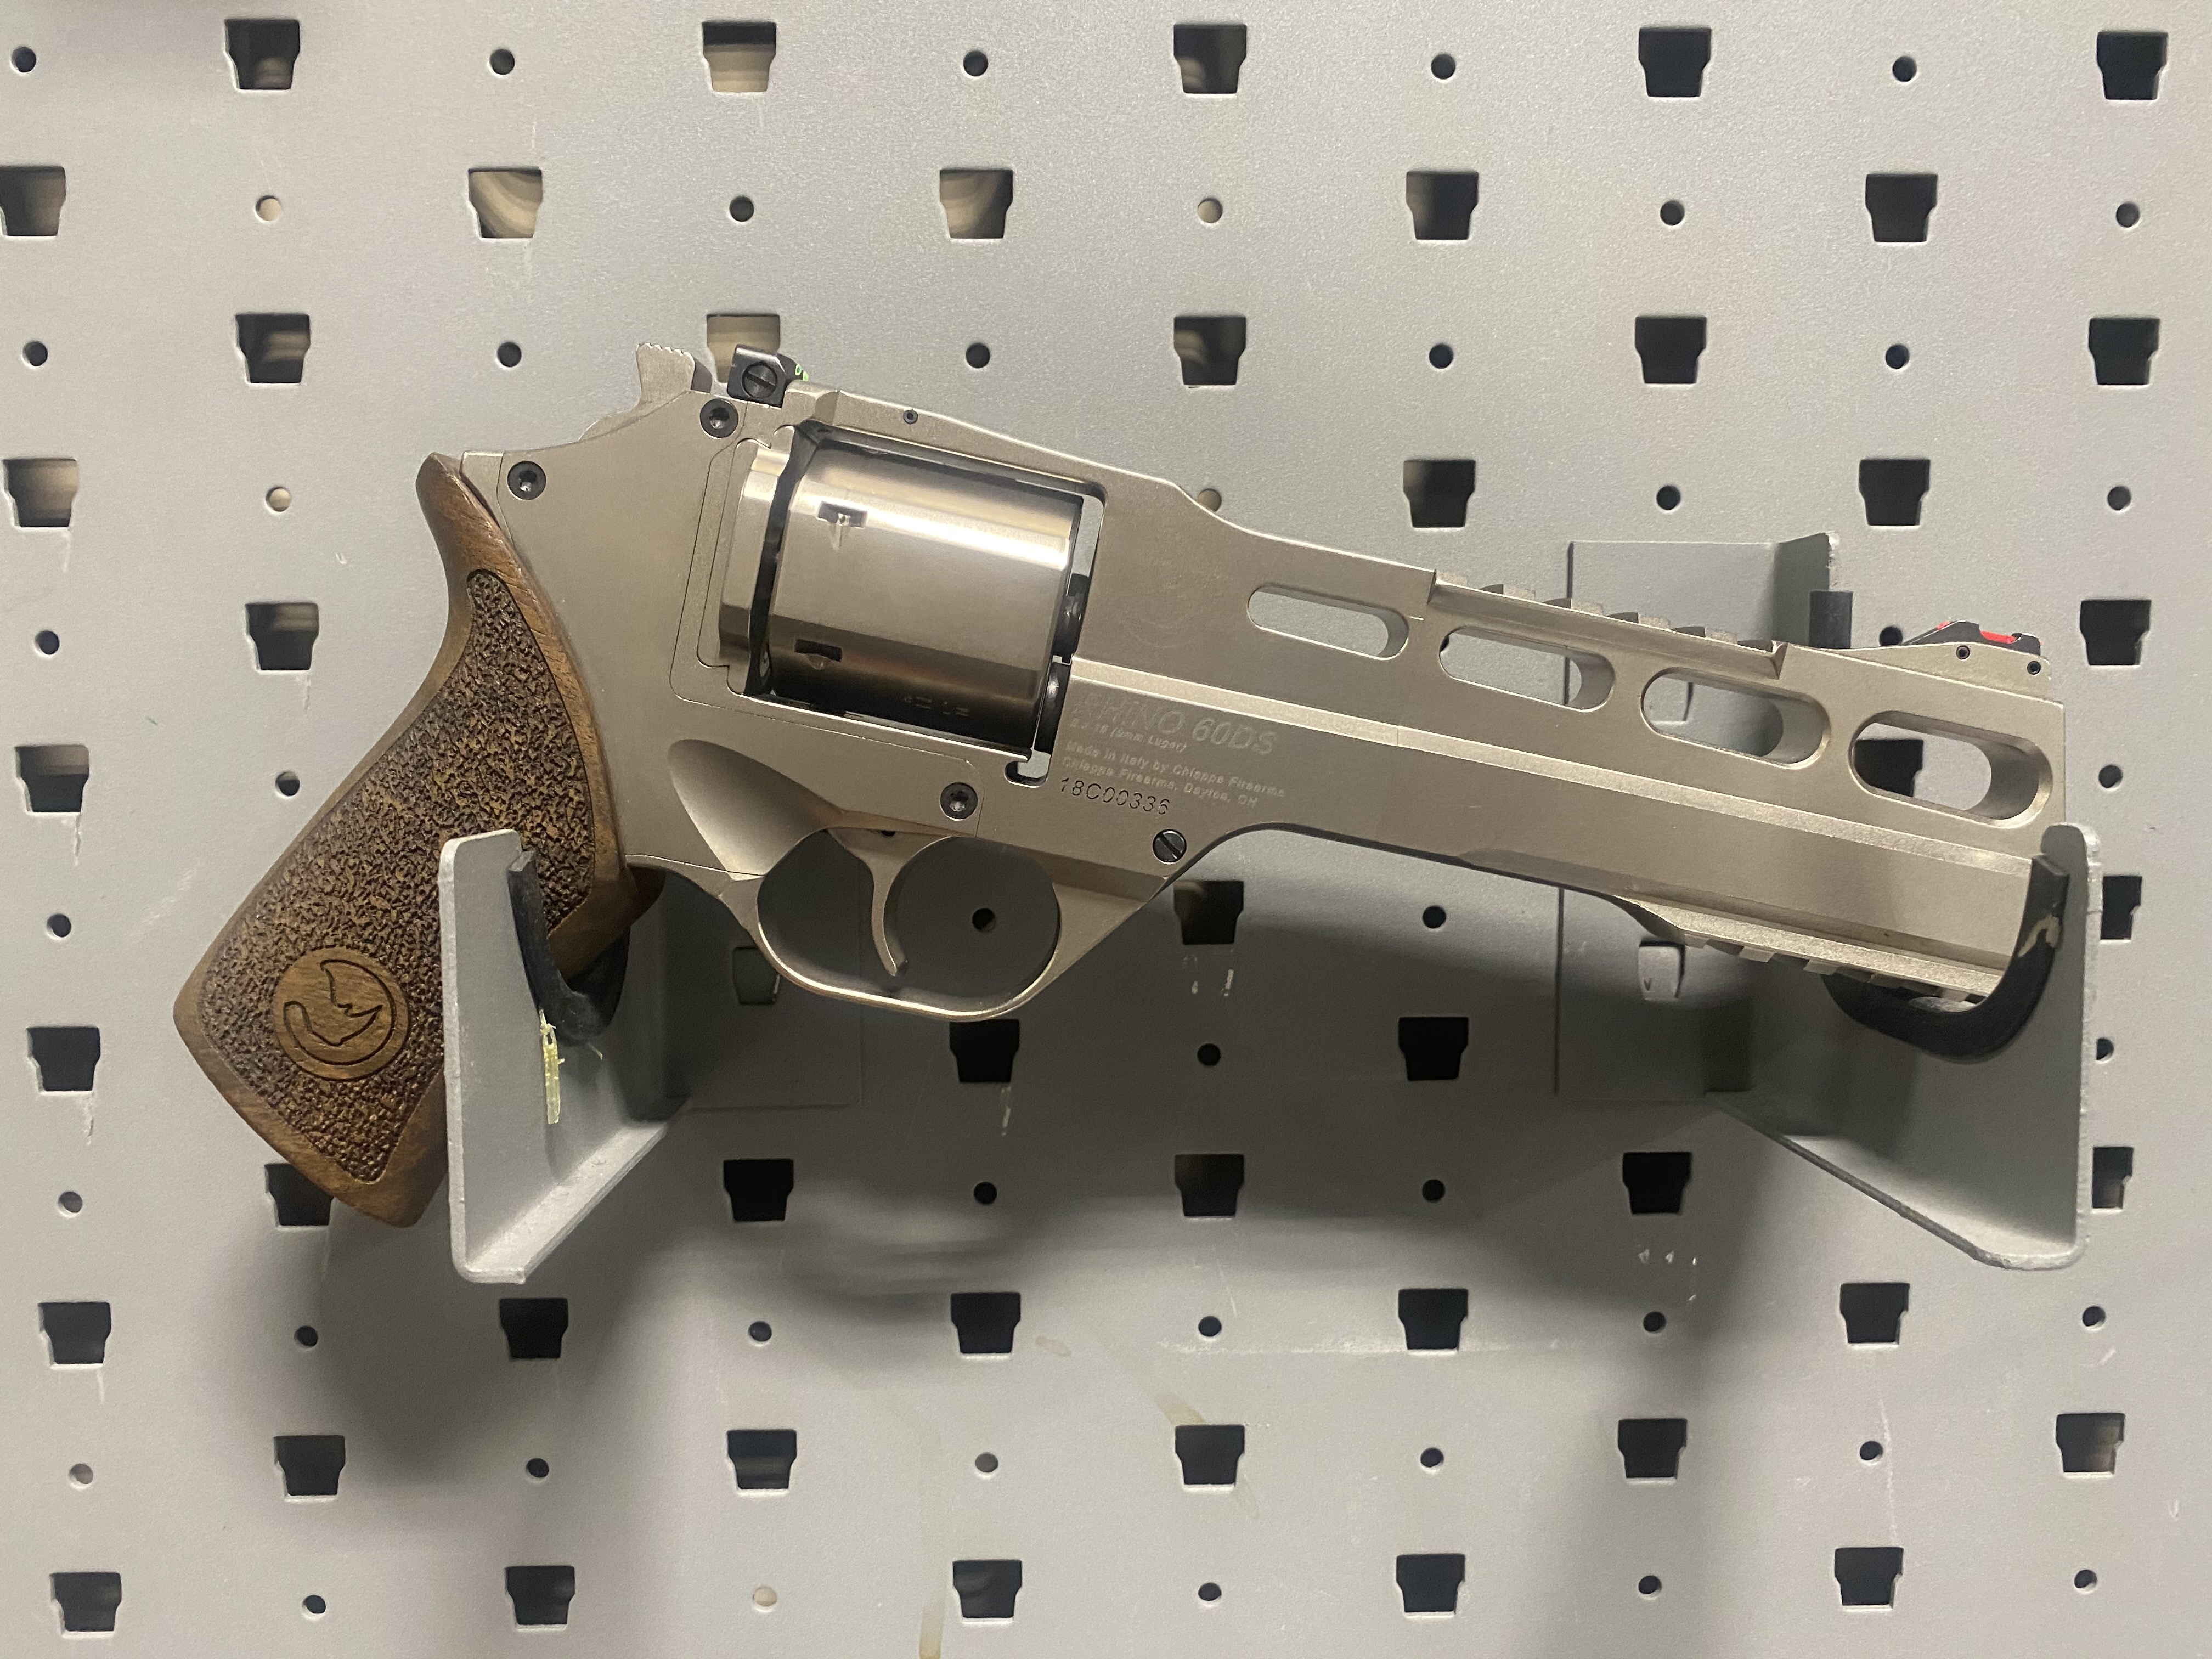 Rhino Revolver - 9mm
$7